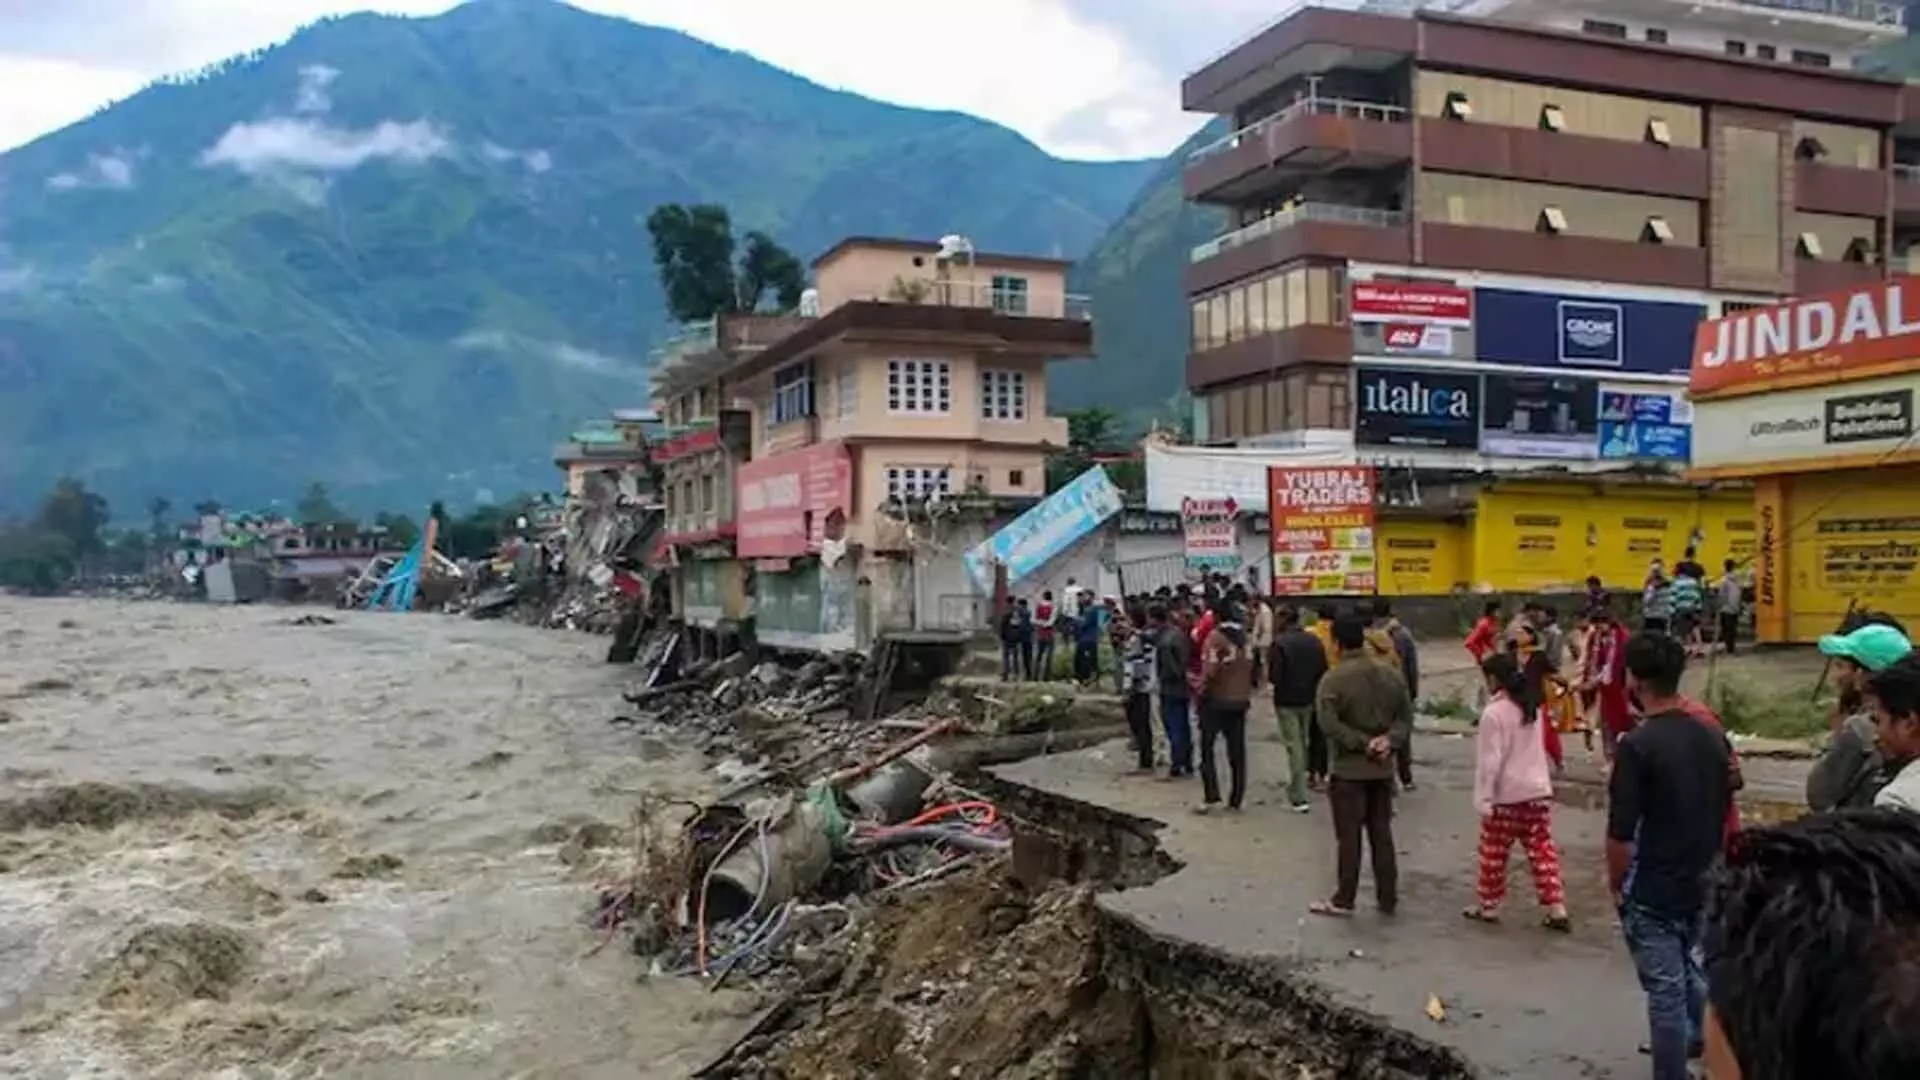 Himachal Pradesh: 190 से अधिक सड़कें बंद, 7 अगस्त तक येलो अलर्ट जारी